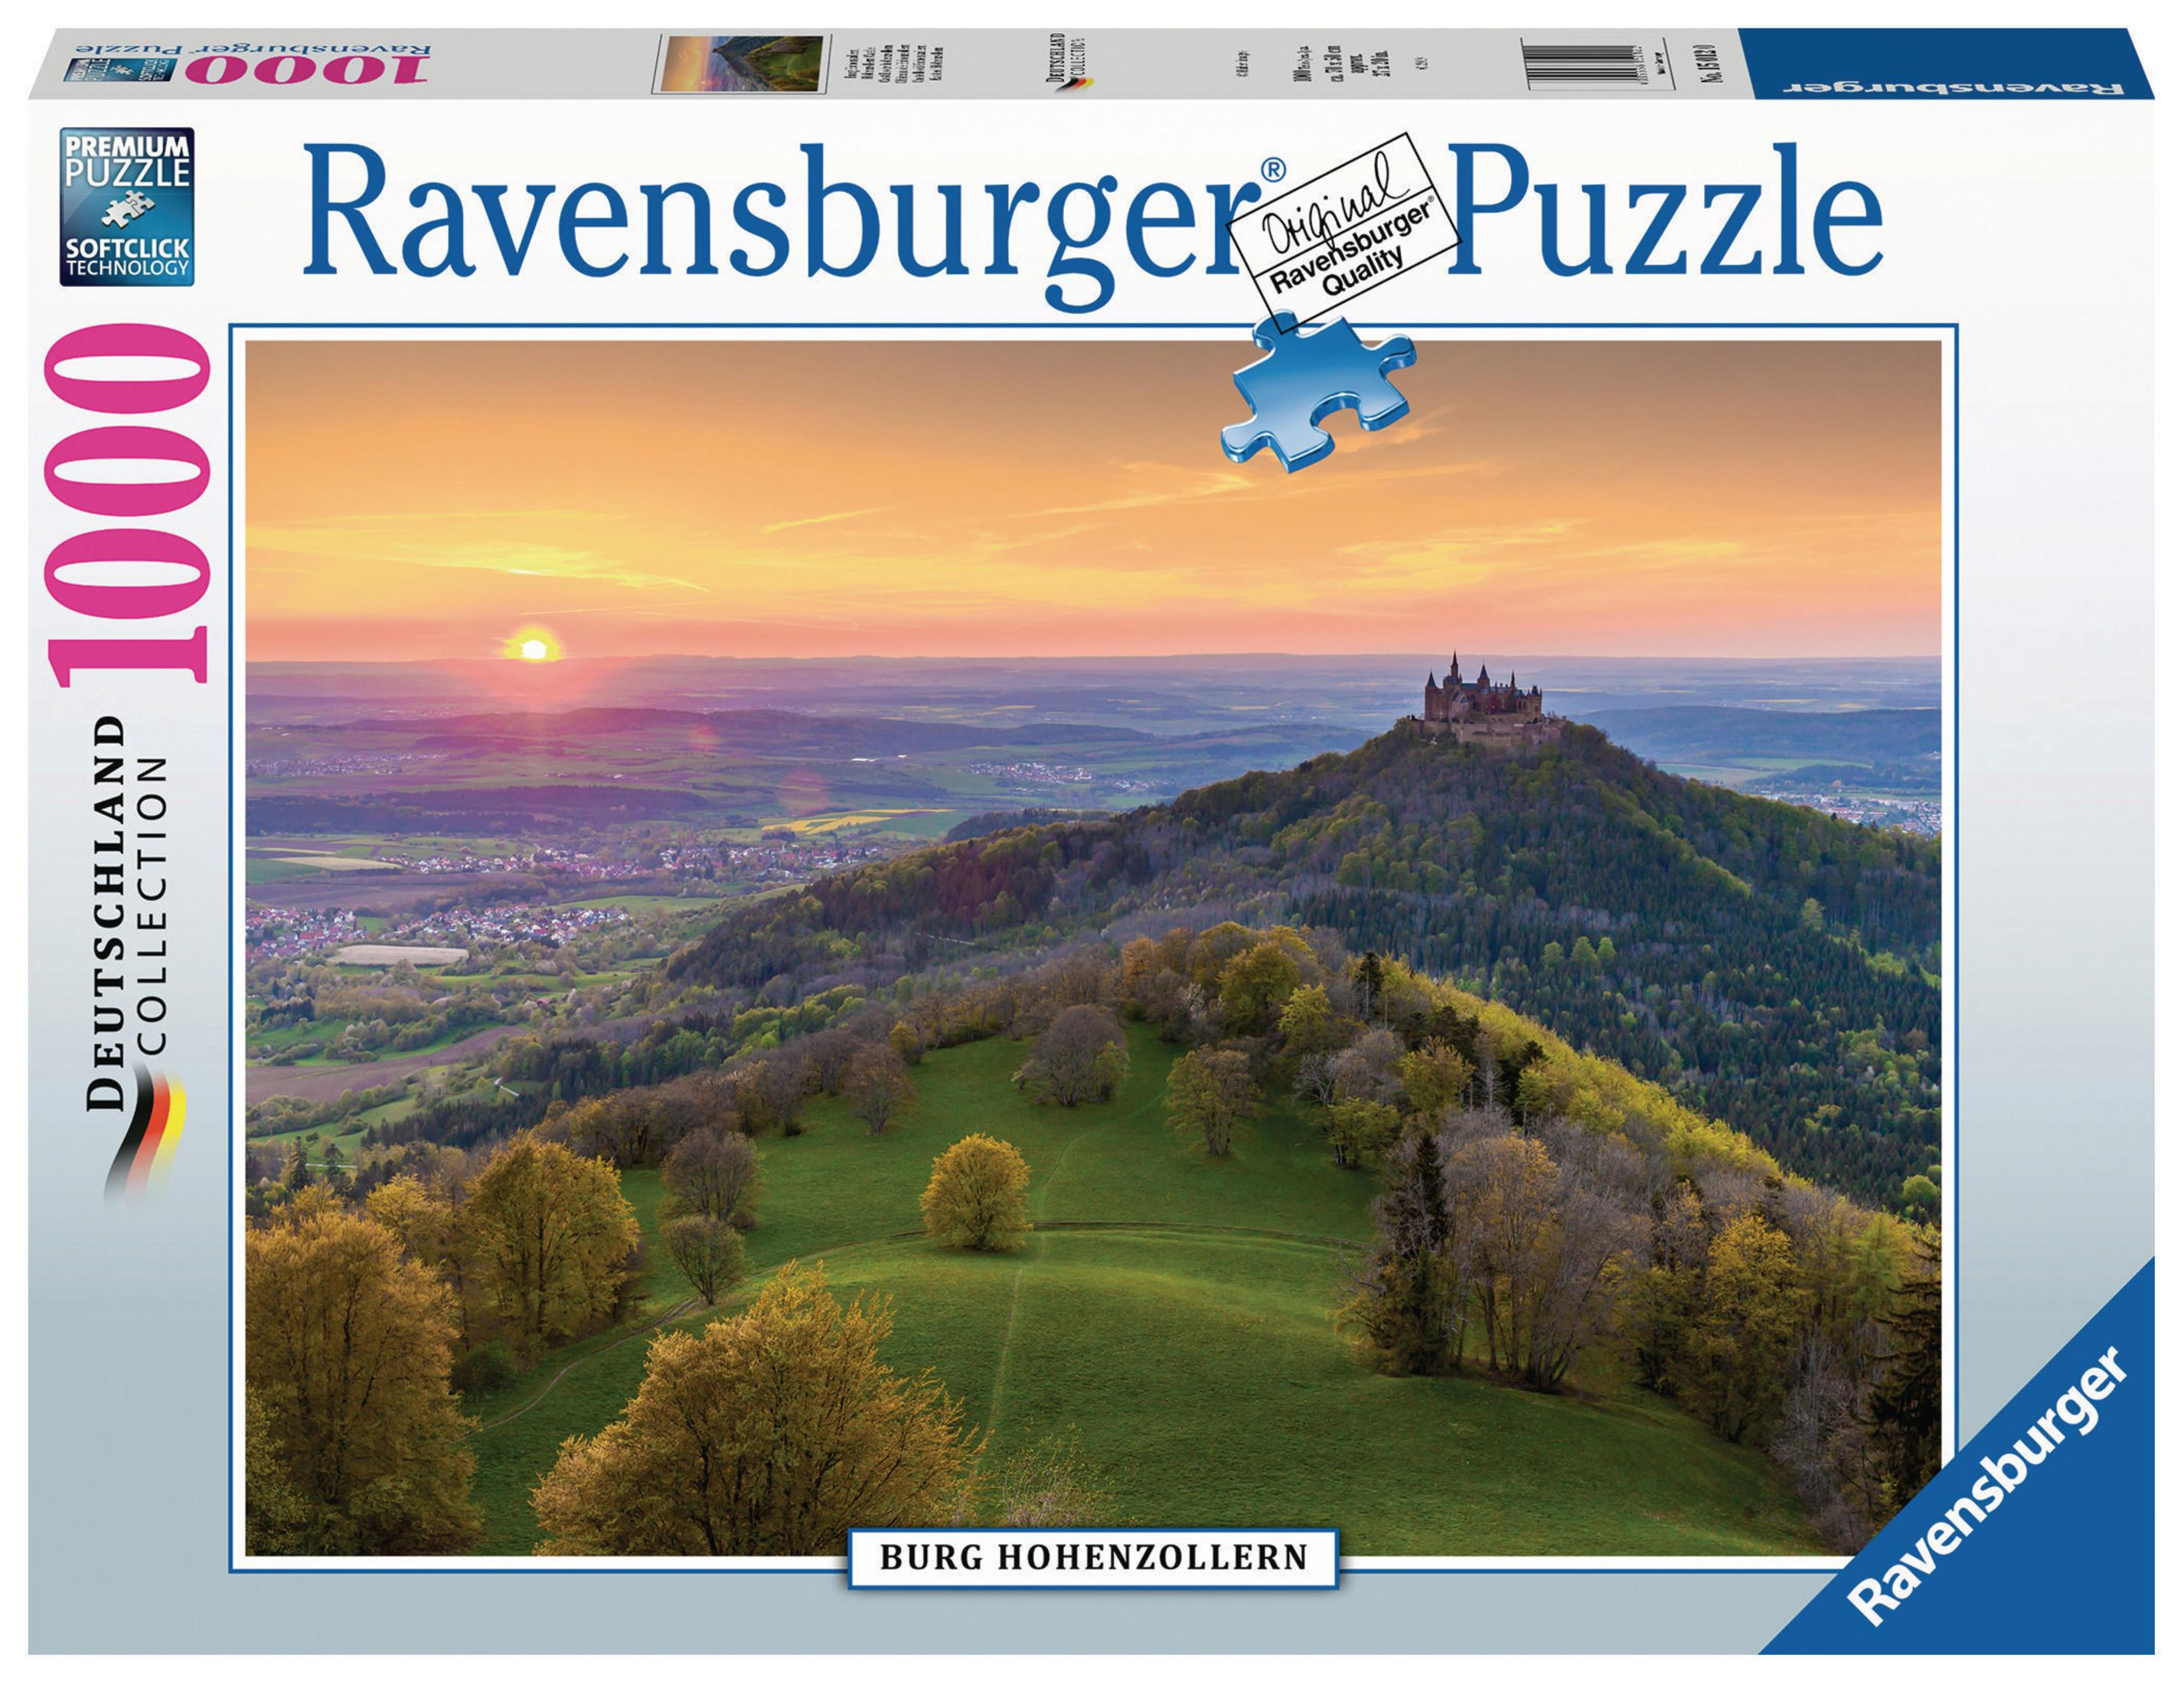 RAVENSBURGER HOHENZOLLERN 15012 BURG Puzzle